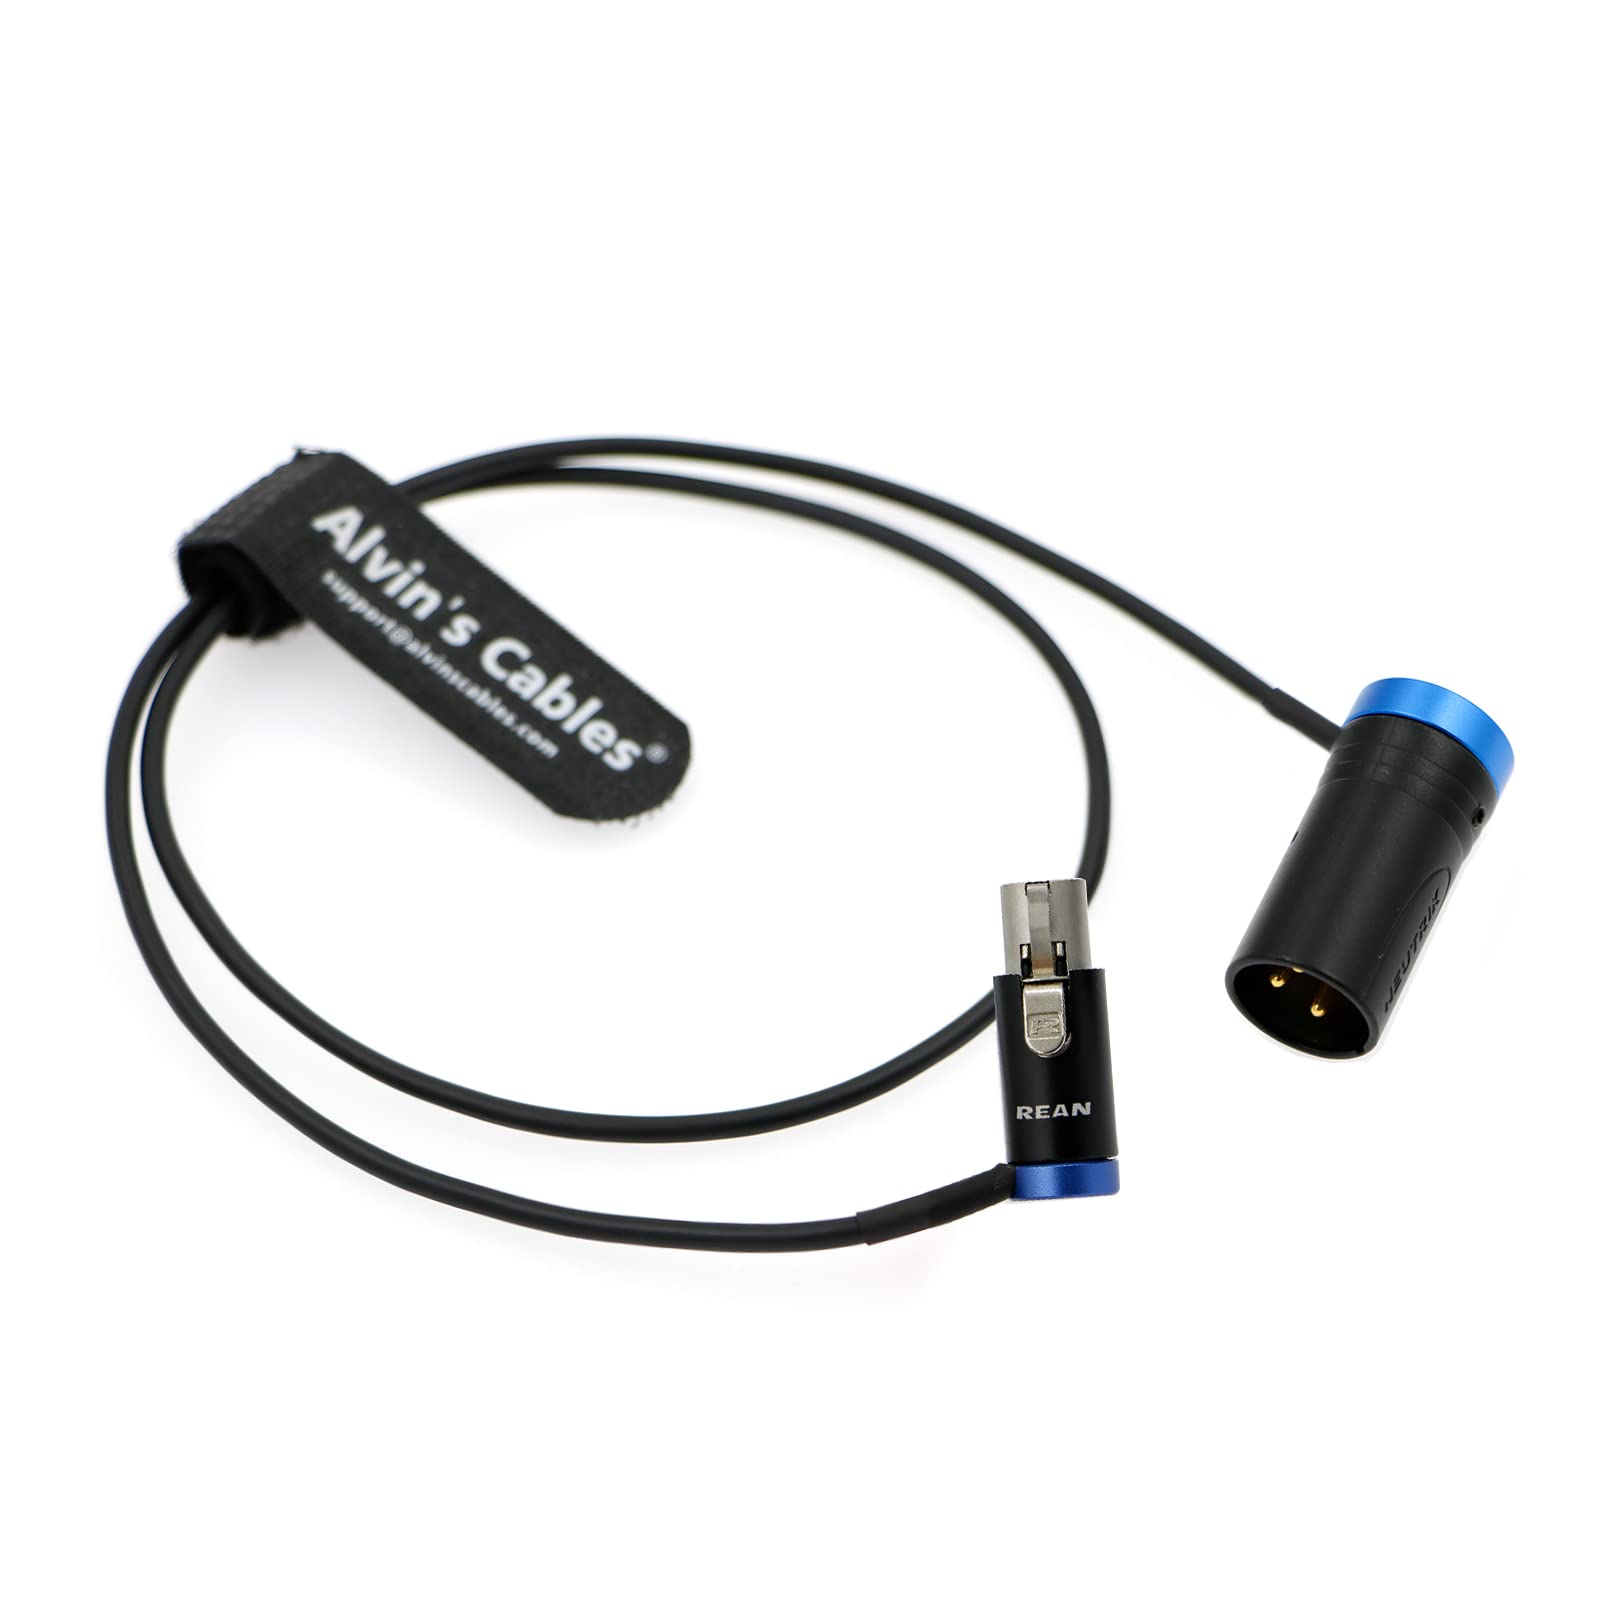 Alvin's Cables Low Profile TA3F auf XLR 3-poliger Stecker Audiokabel für Lectrosonics-Empfänger an Soundgeräte 60 cm | 24 Zoll Blau